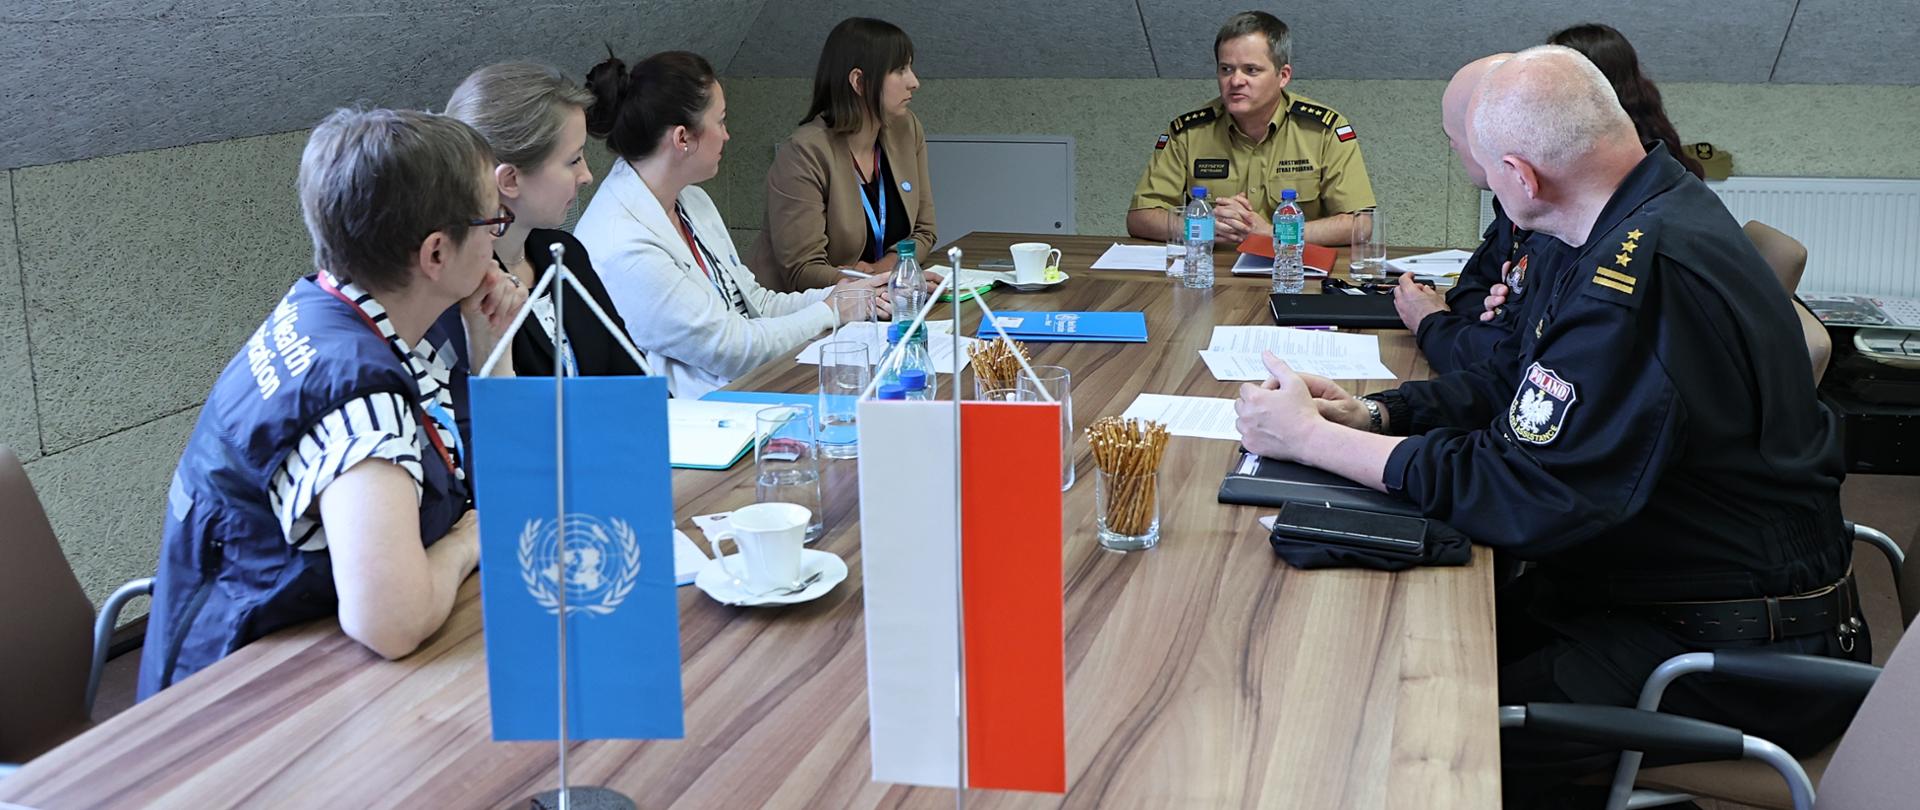 2 funkcjonariuszy KG PSP oraz 4 kobiety (po lewej stronie stołu) rozmawiają przy stole. Na stole stoją flagi WHO oraz Polski